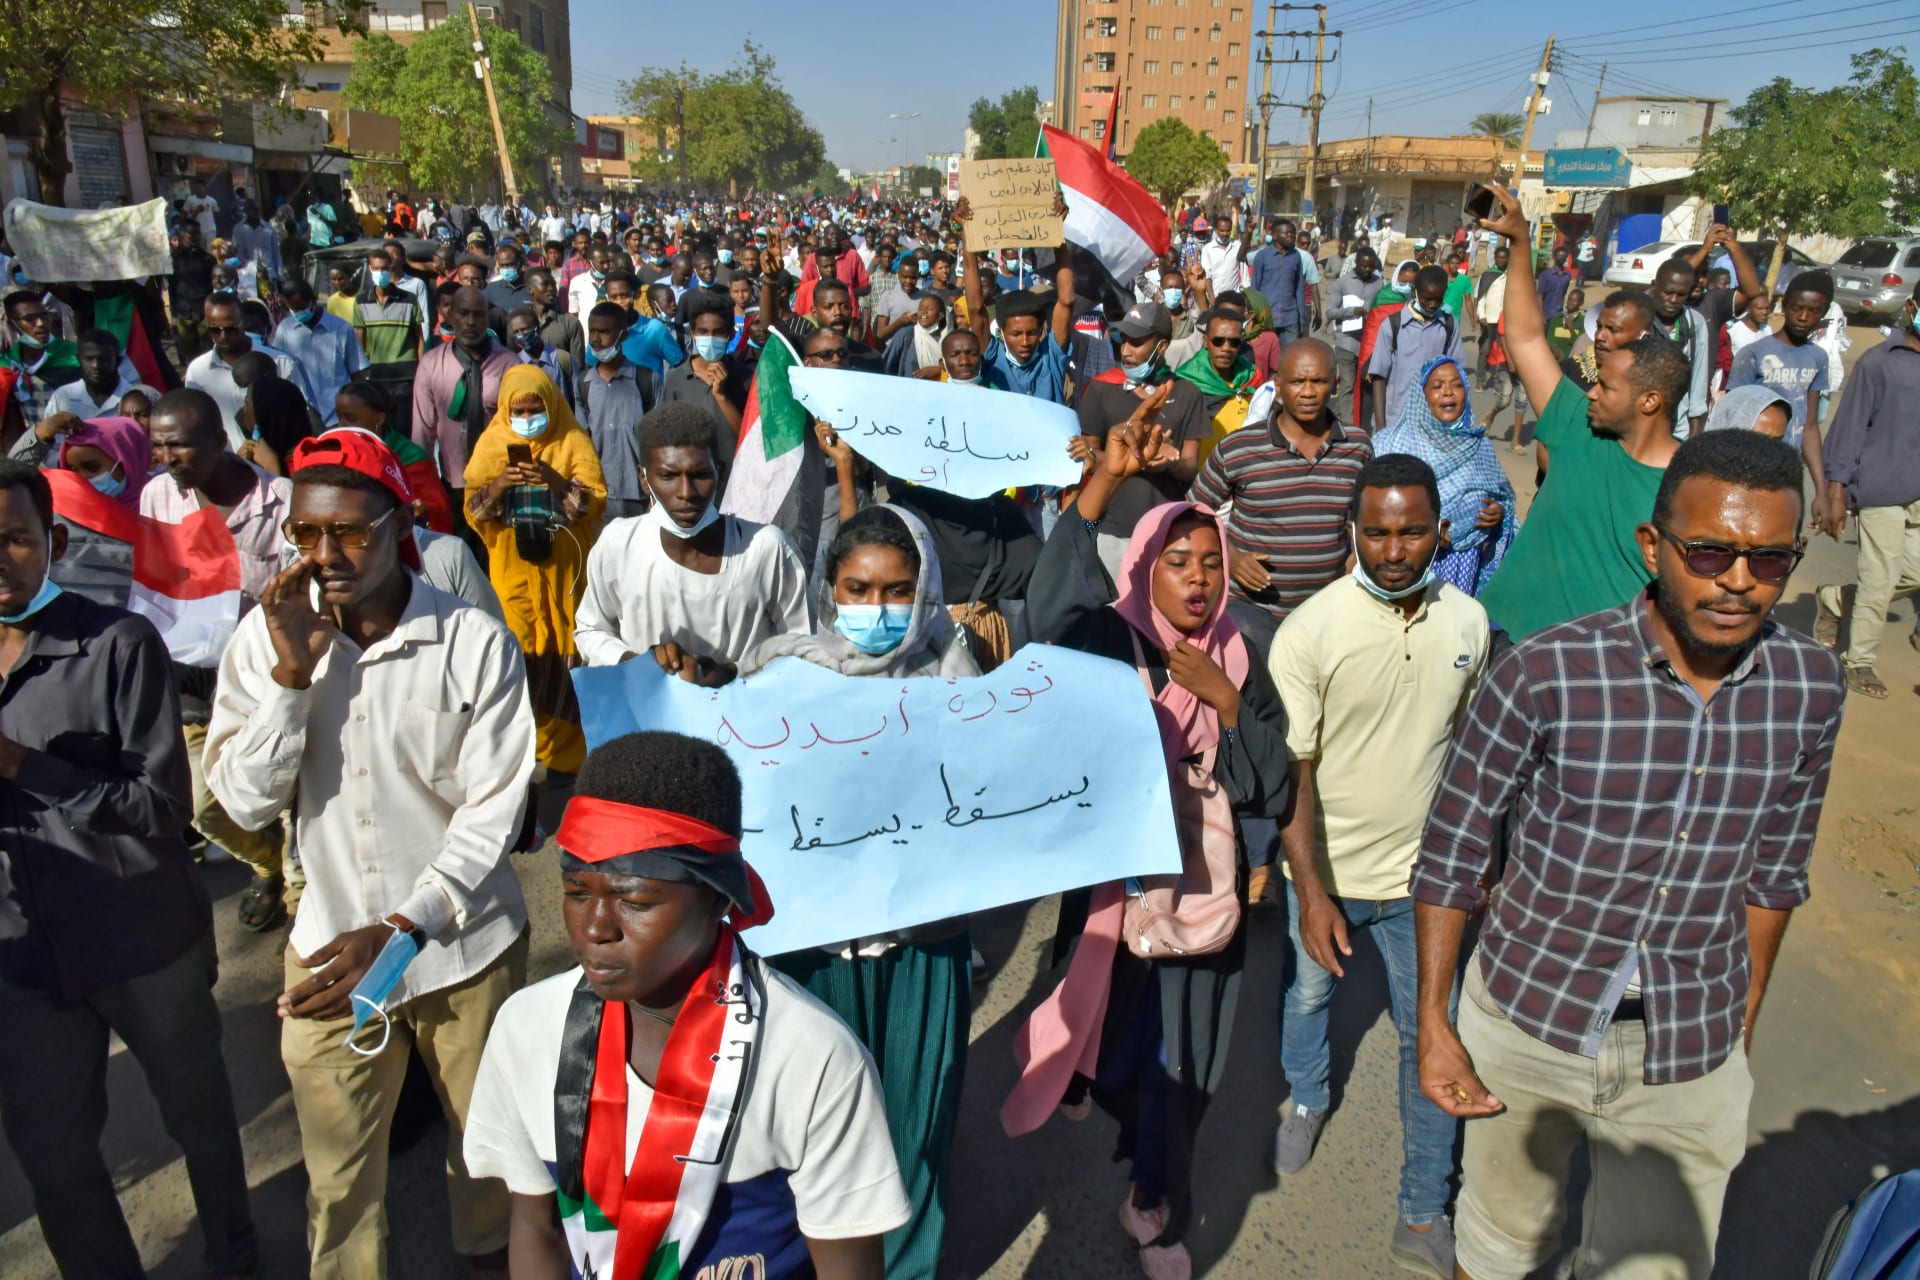 متظاهرون سودانيون يرفعون لافتات وأعلام خلال مظاهرة تطالب بعودة الحكم المدني في أم درمان